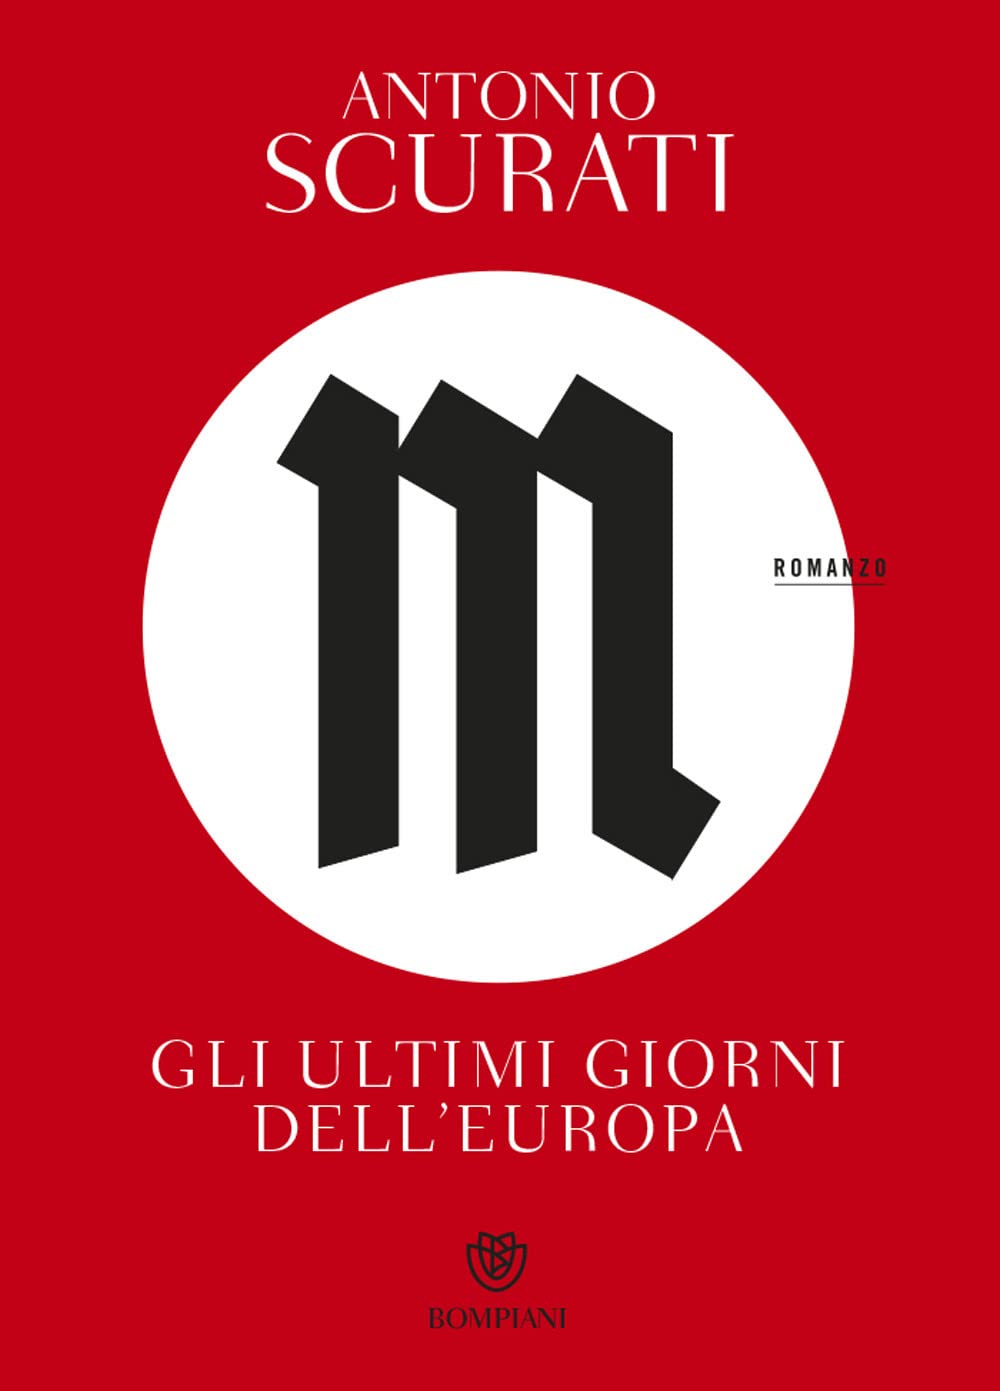 Antonio Scurati: M. Gli ultimi giorni dell’Europa (Paperback, Italiano language, 2022, Bompiani)